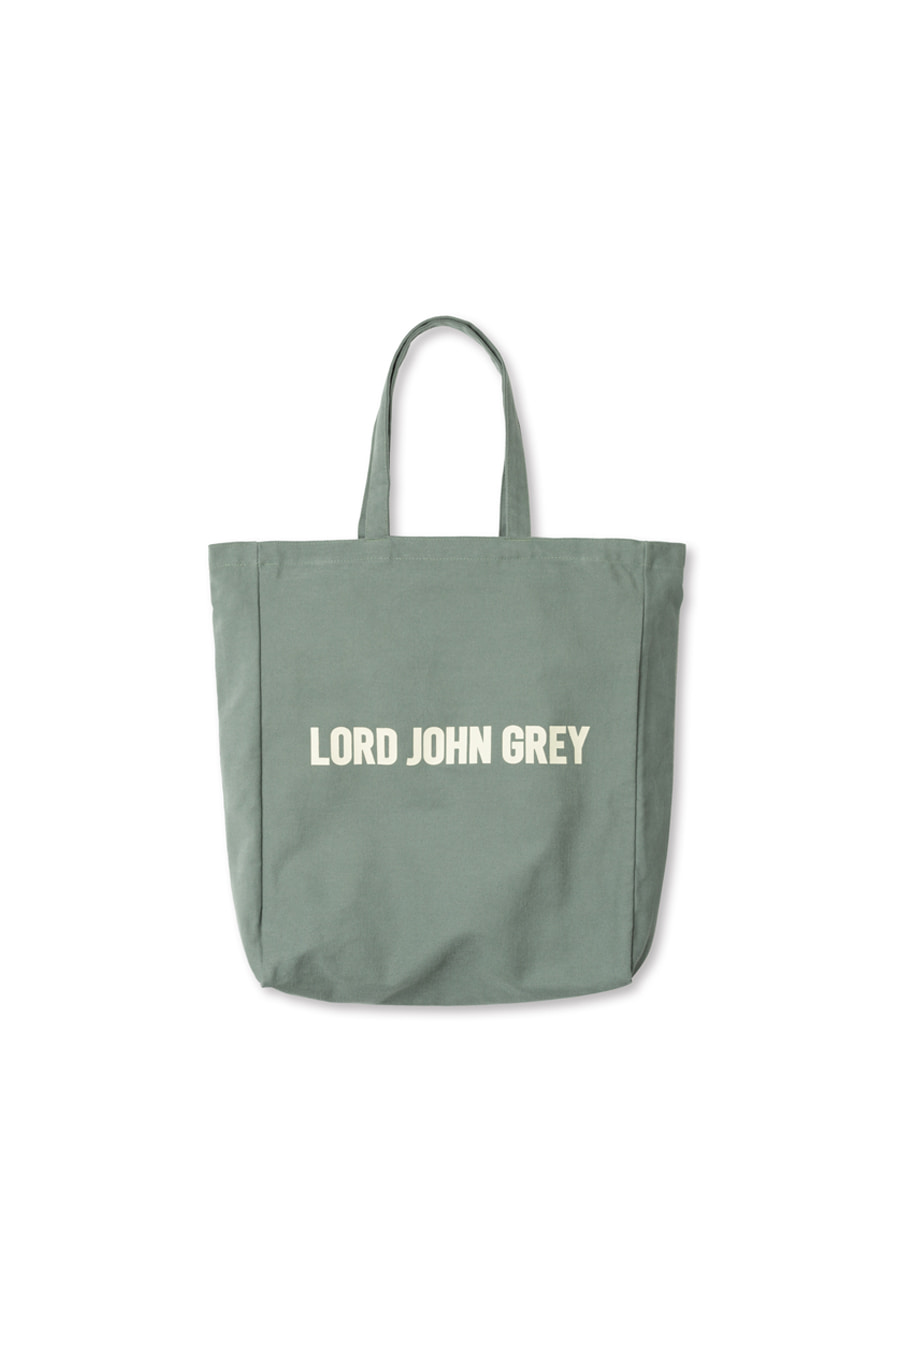 lord john grey